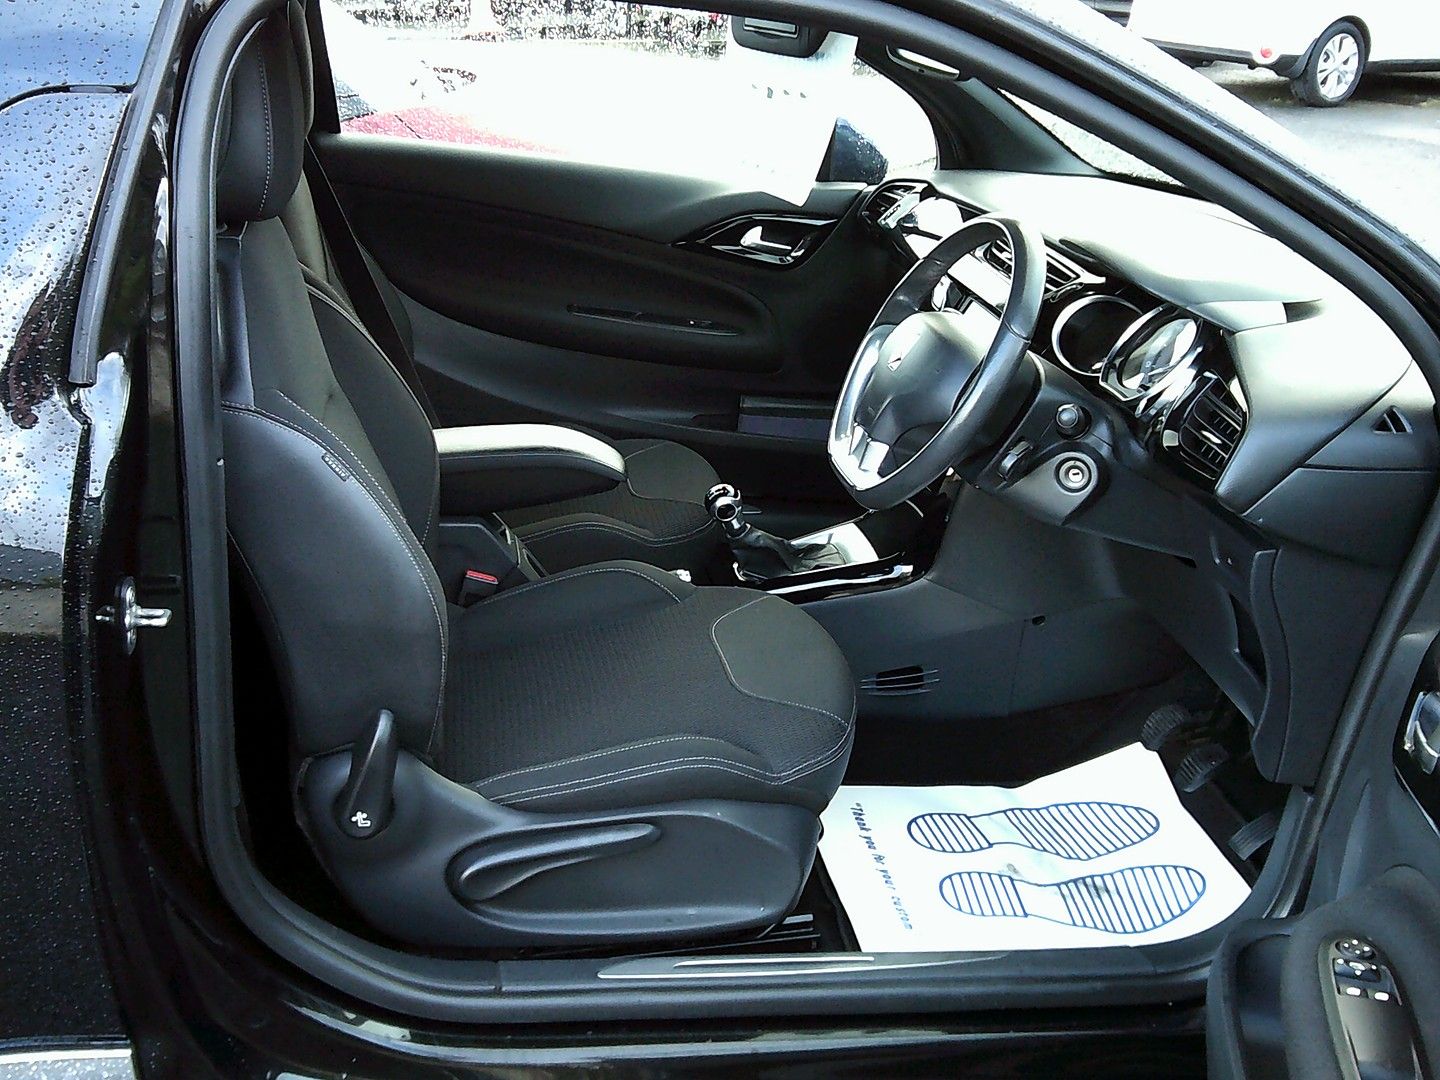 CITROEN DS3 Cabrio VTi 120 DStyle (2013) - Picture 10